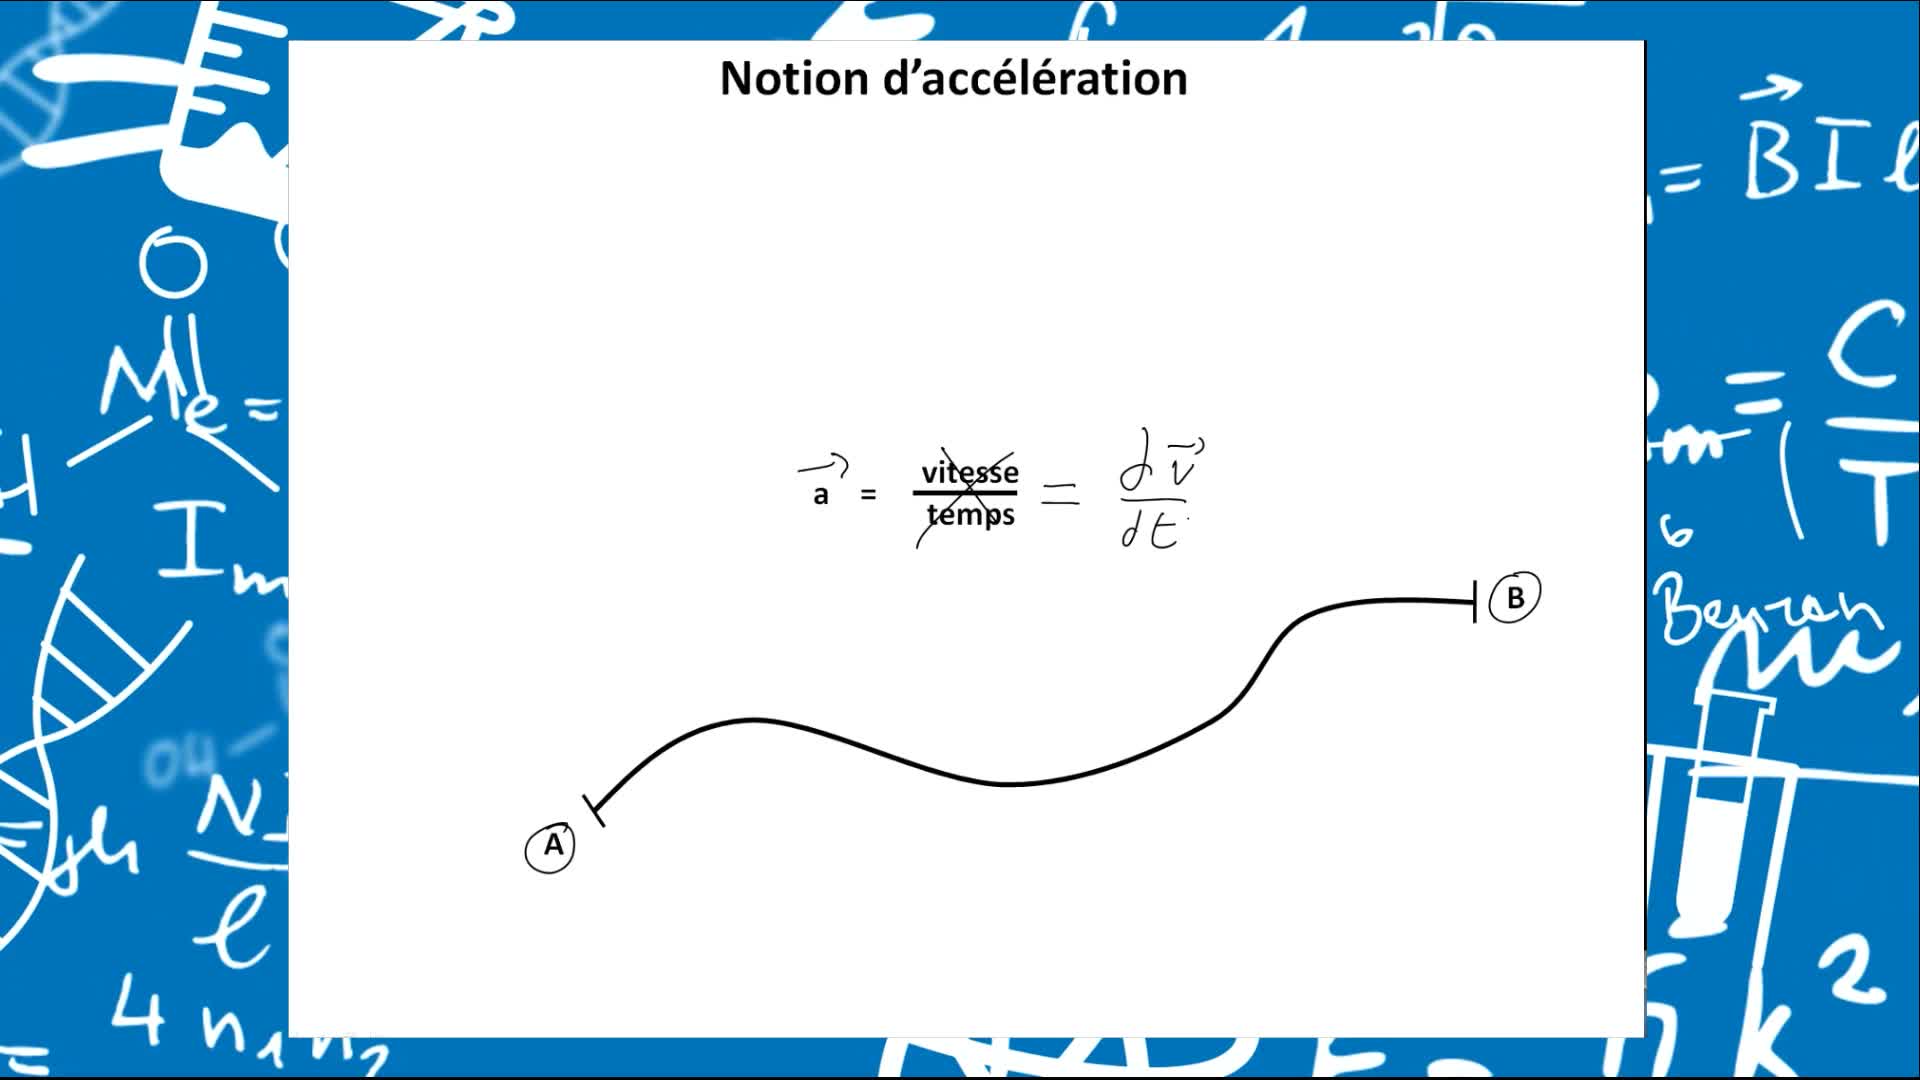 Remediation - Vecteurs position, vitesses et accélérations décrits en coordonnées cartésiennes et polaires - VIDEO 13-Accélération